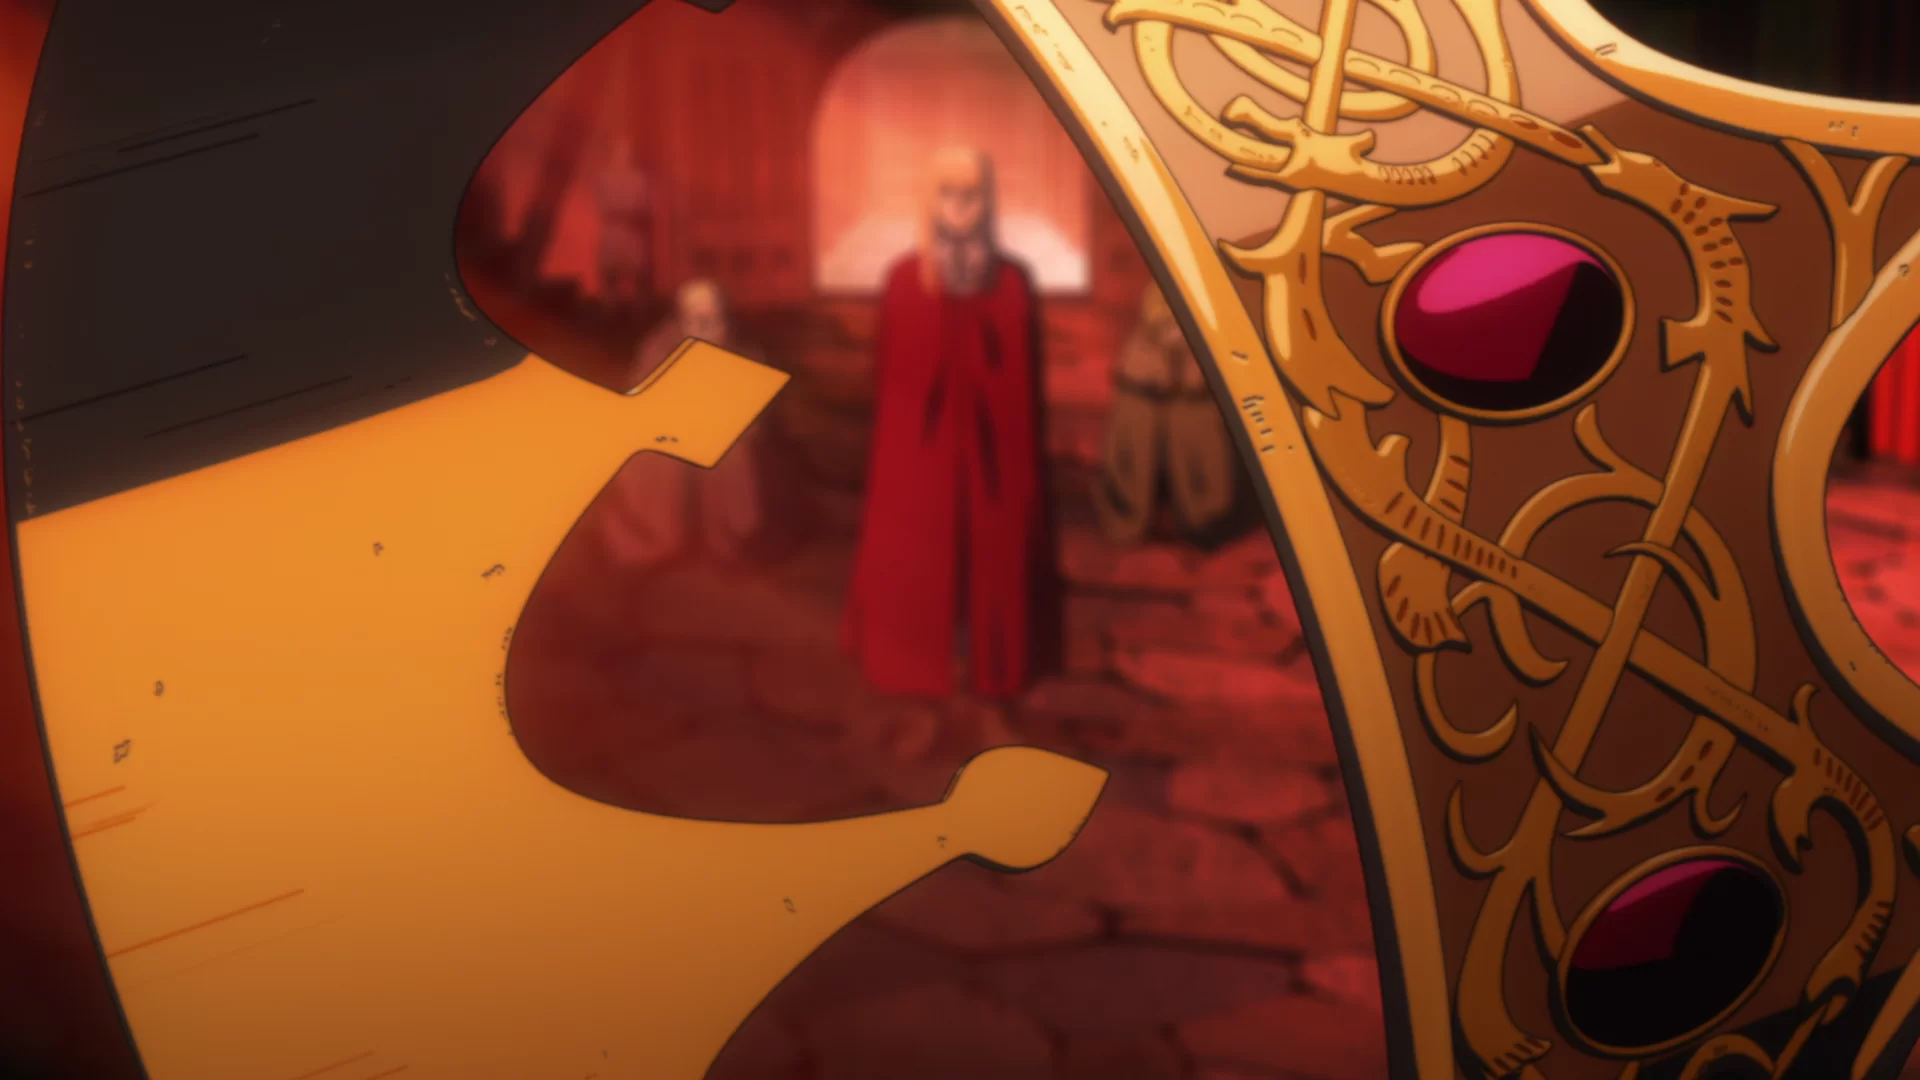 Minaturka 20 odcinka anime Vinland Saga